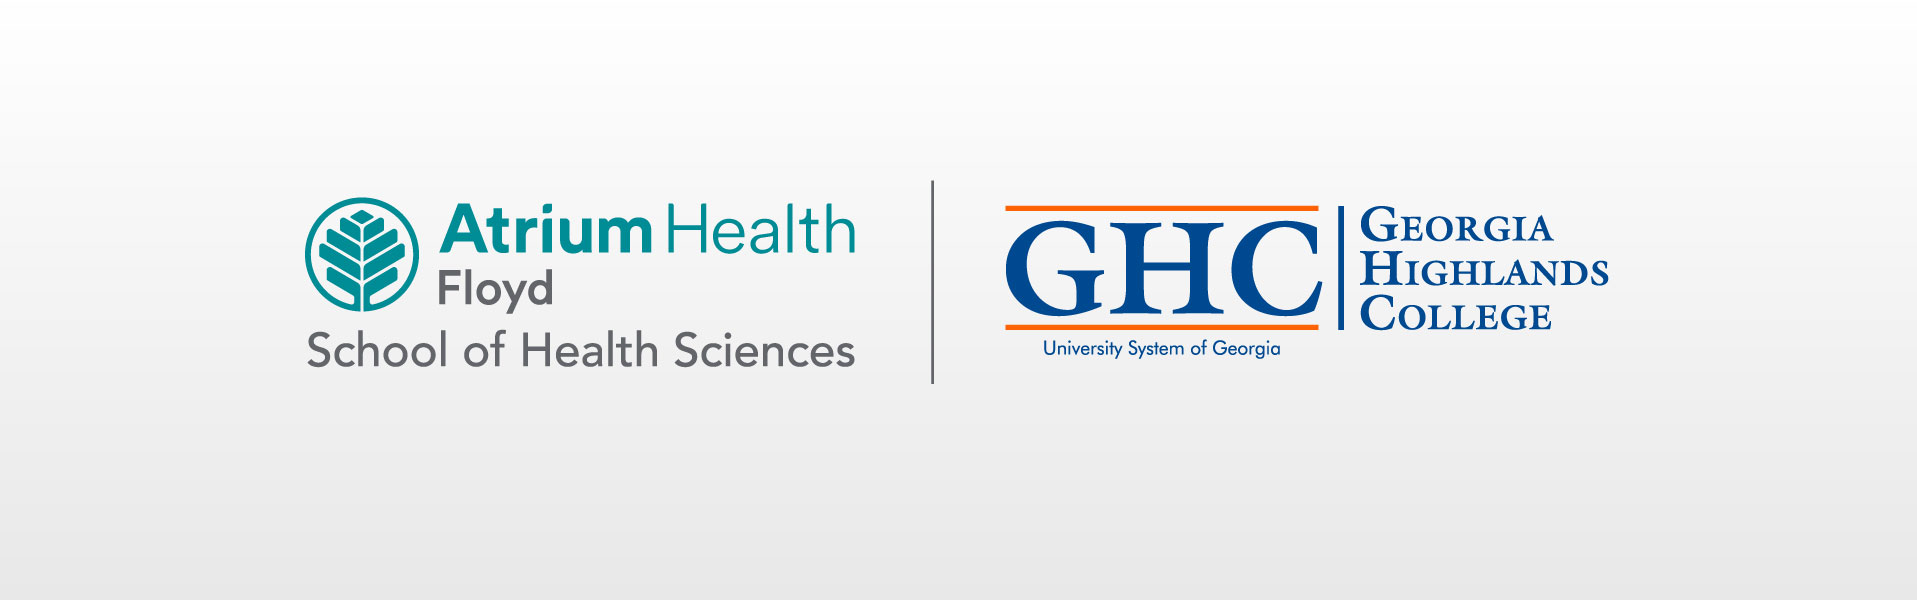 Atrium Health Floyd and Georgia Highlands College logos